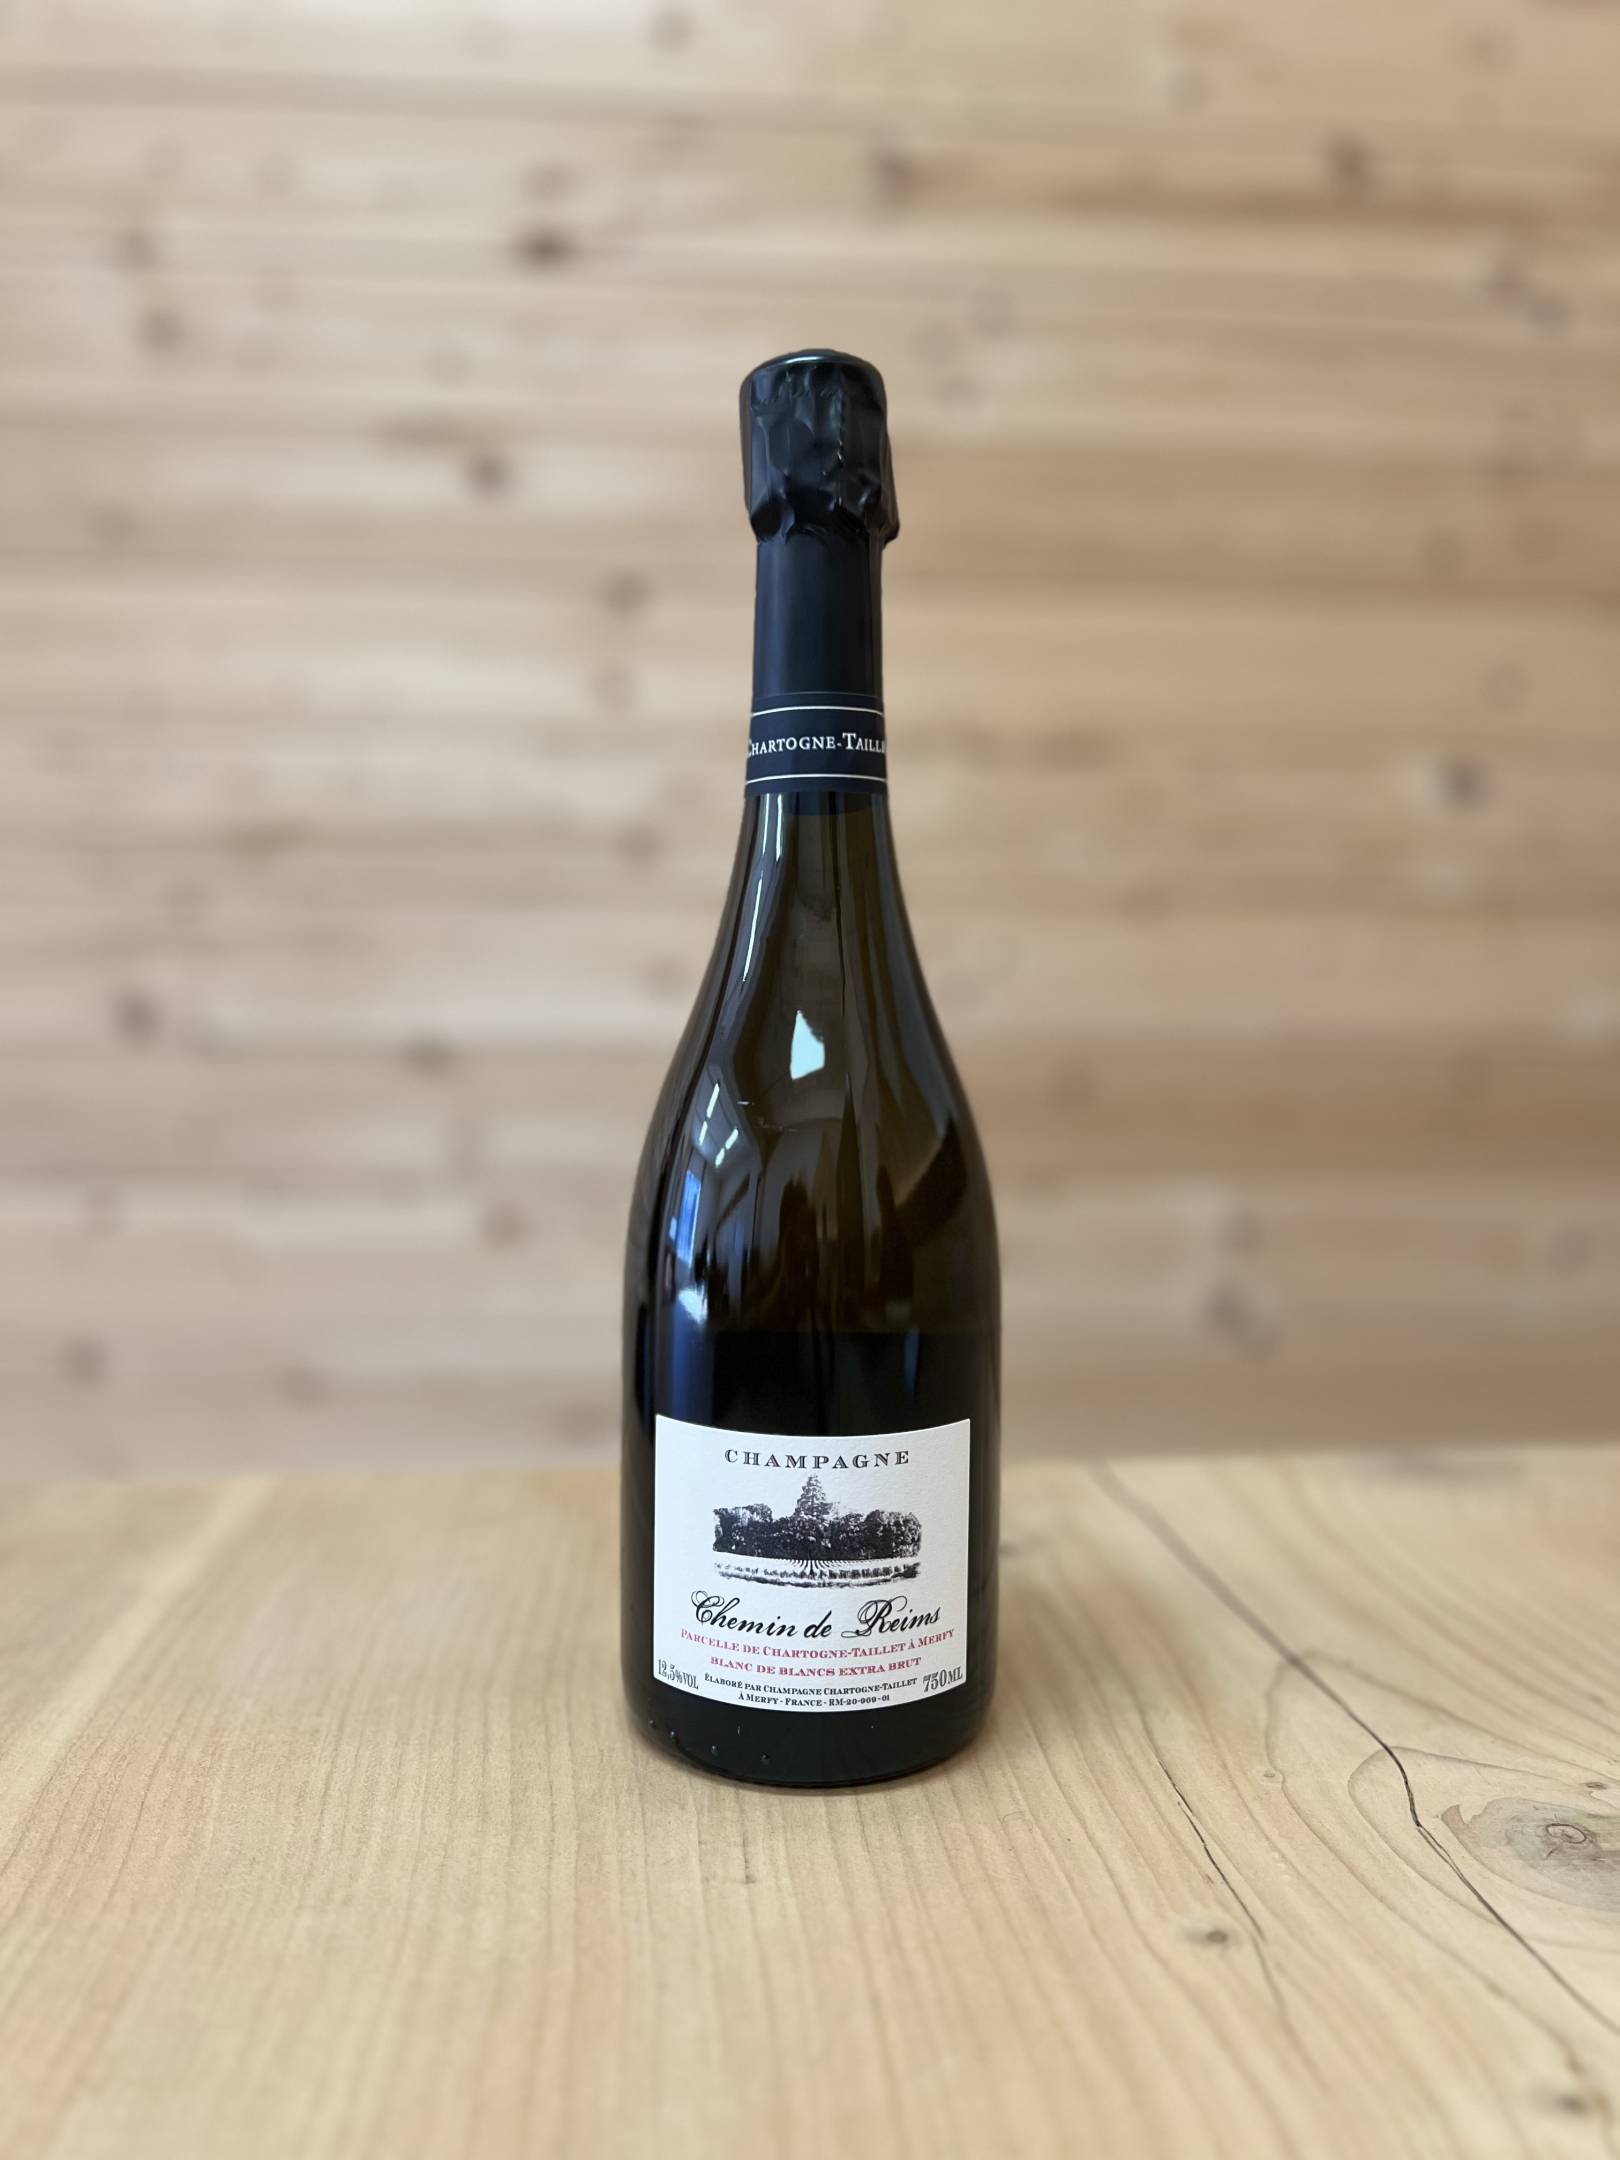 Chartogne Taillet Champagne Chemin de Reims Blanc de Blancs Extra Brut 2019